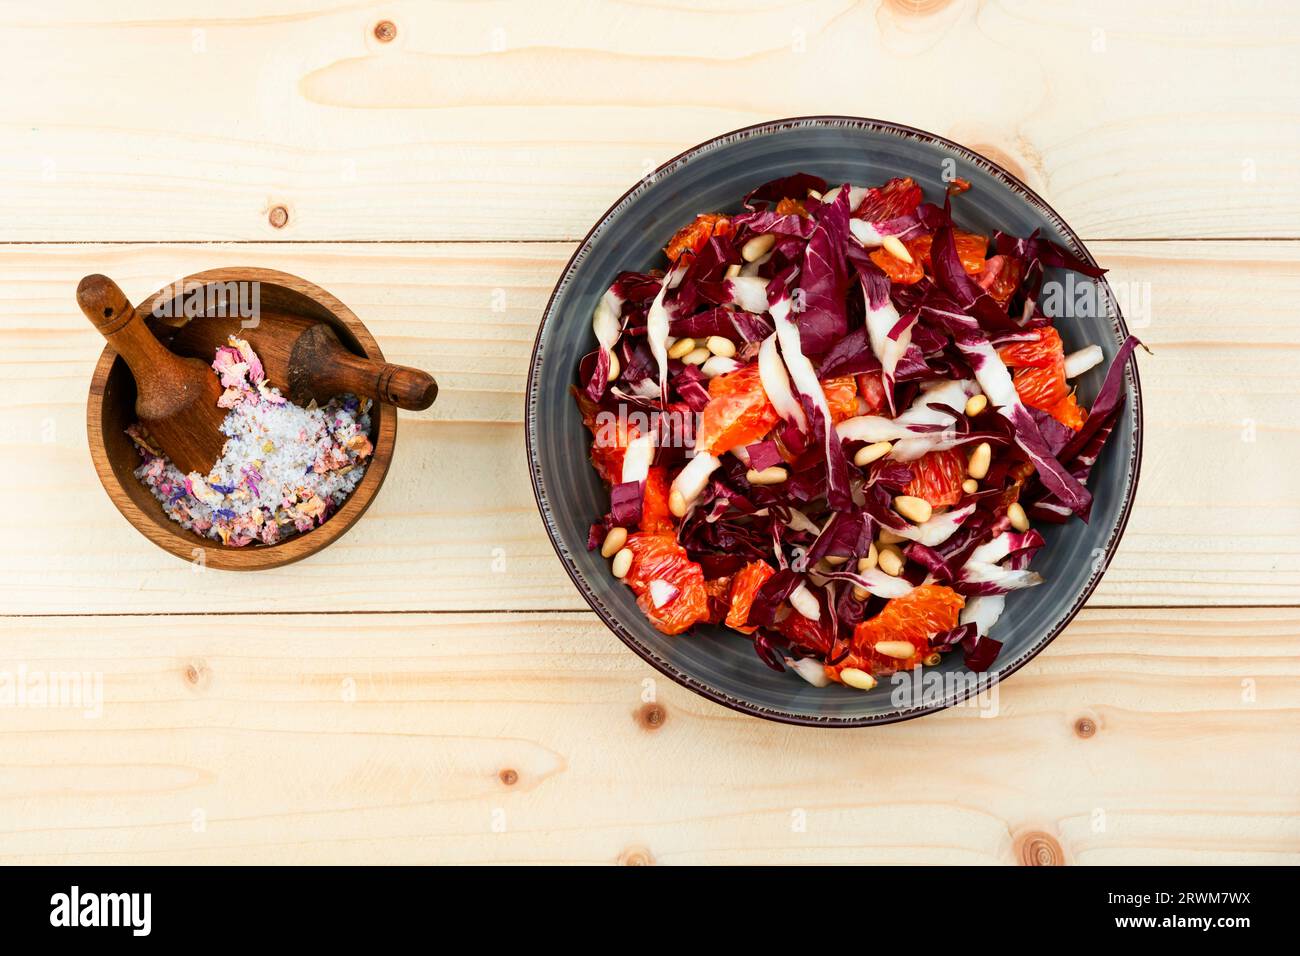 Salade avec chicorée, pamplemousse et pignons de pin sur table en bois. Salade de radicchio Banque D'Images